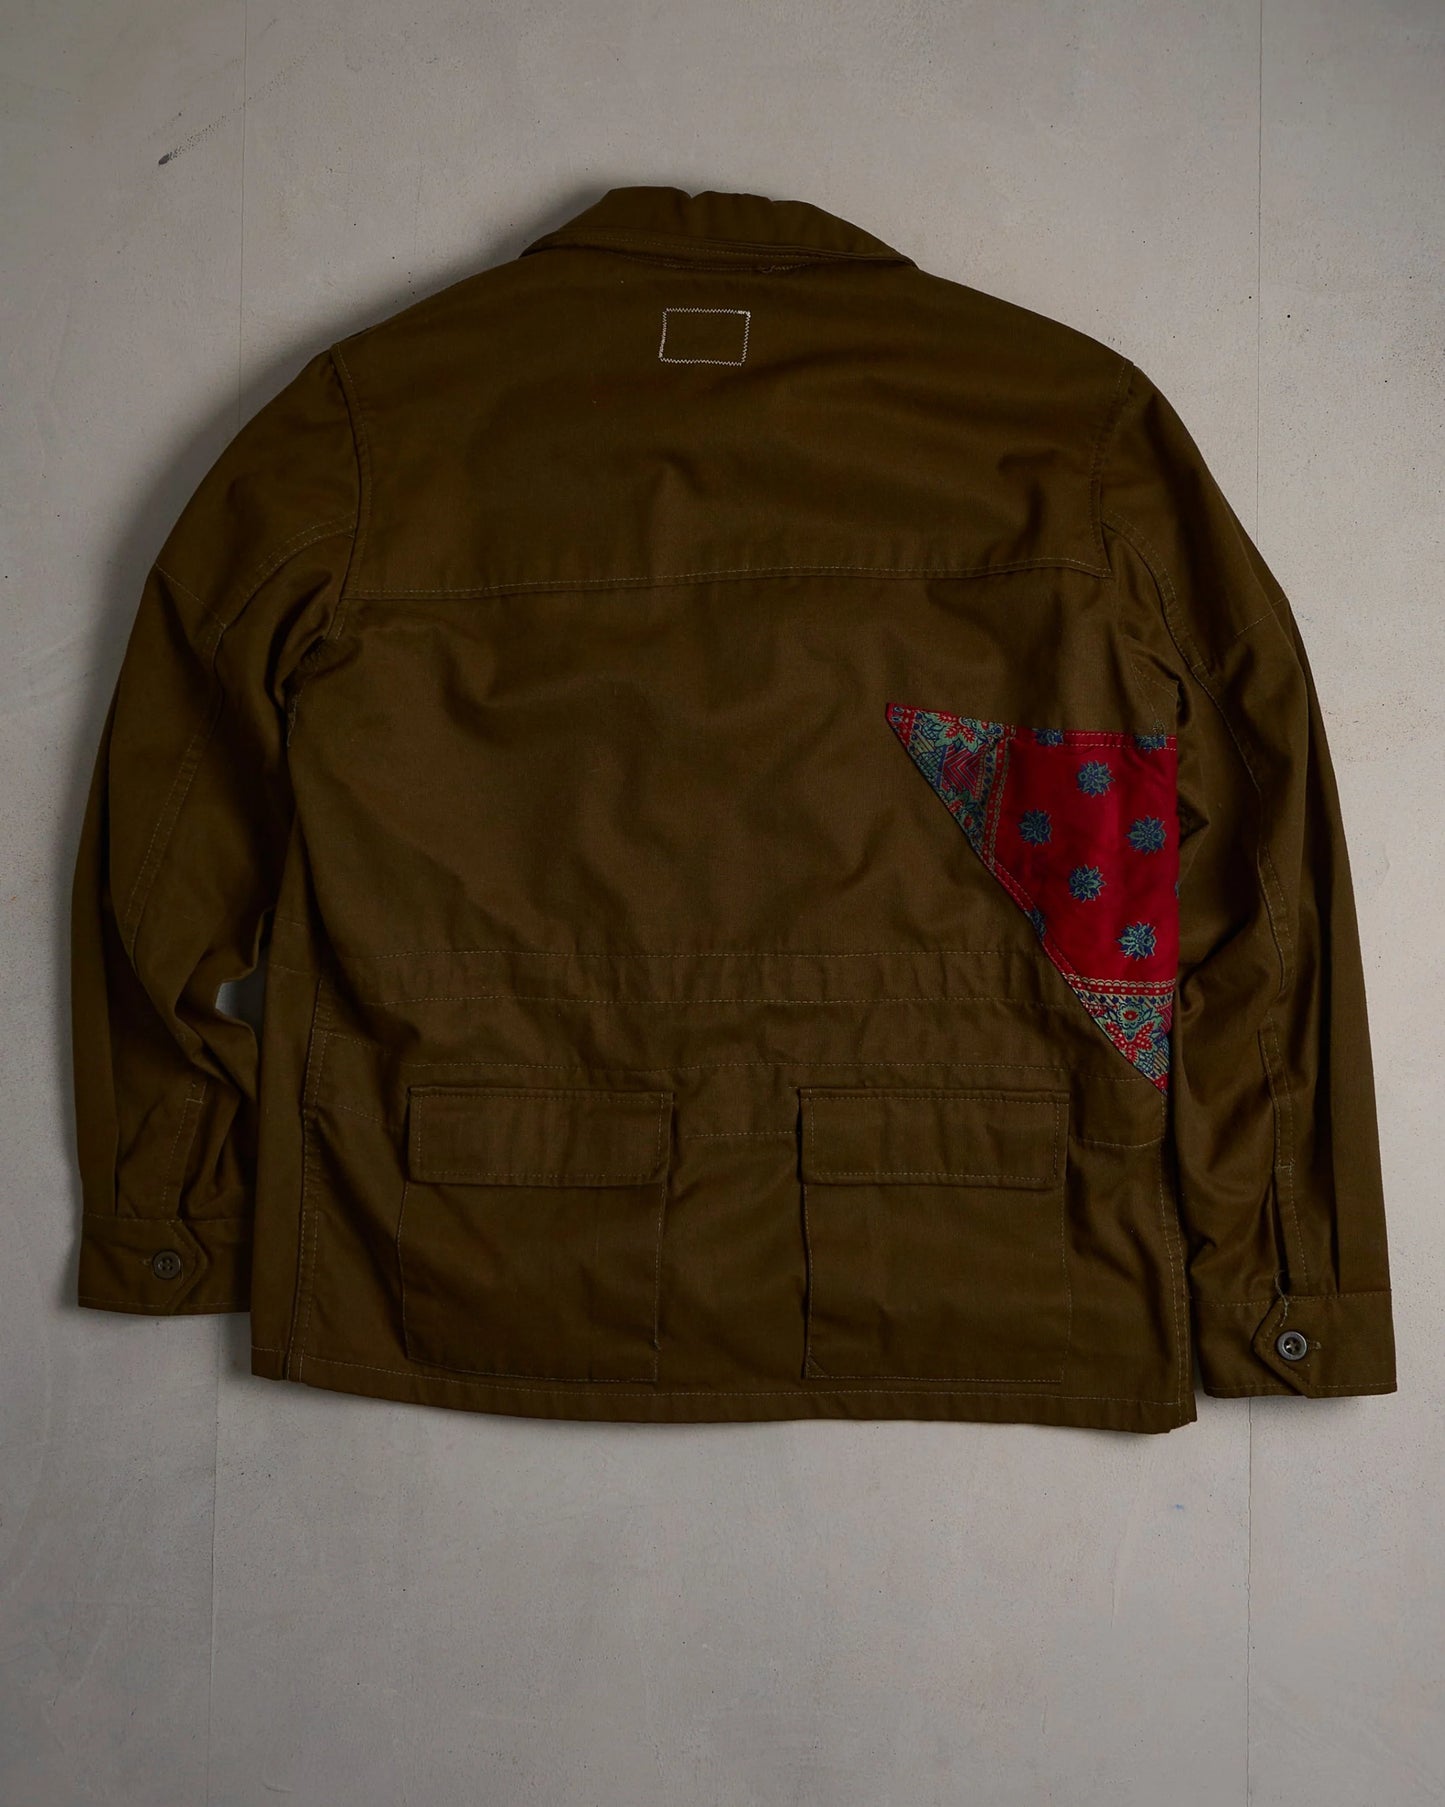 Vintage Staxism Jacket